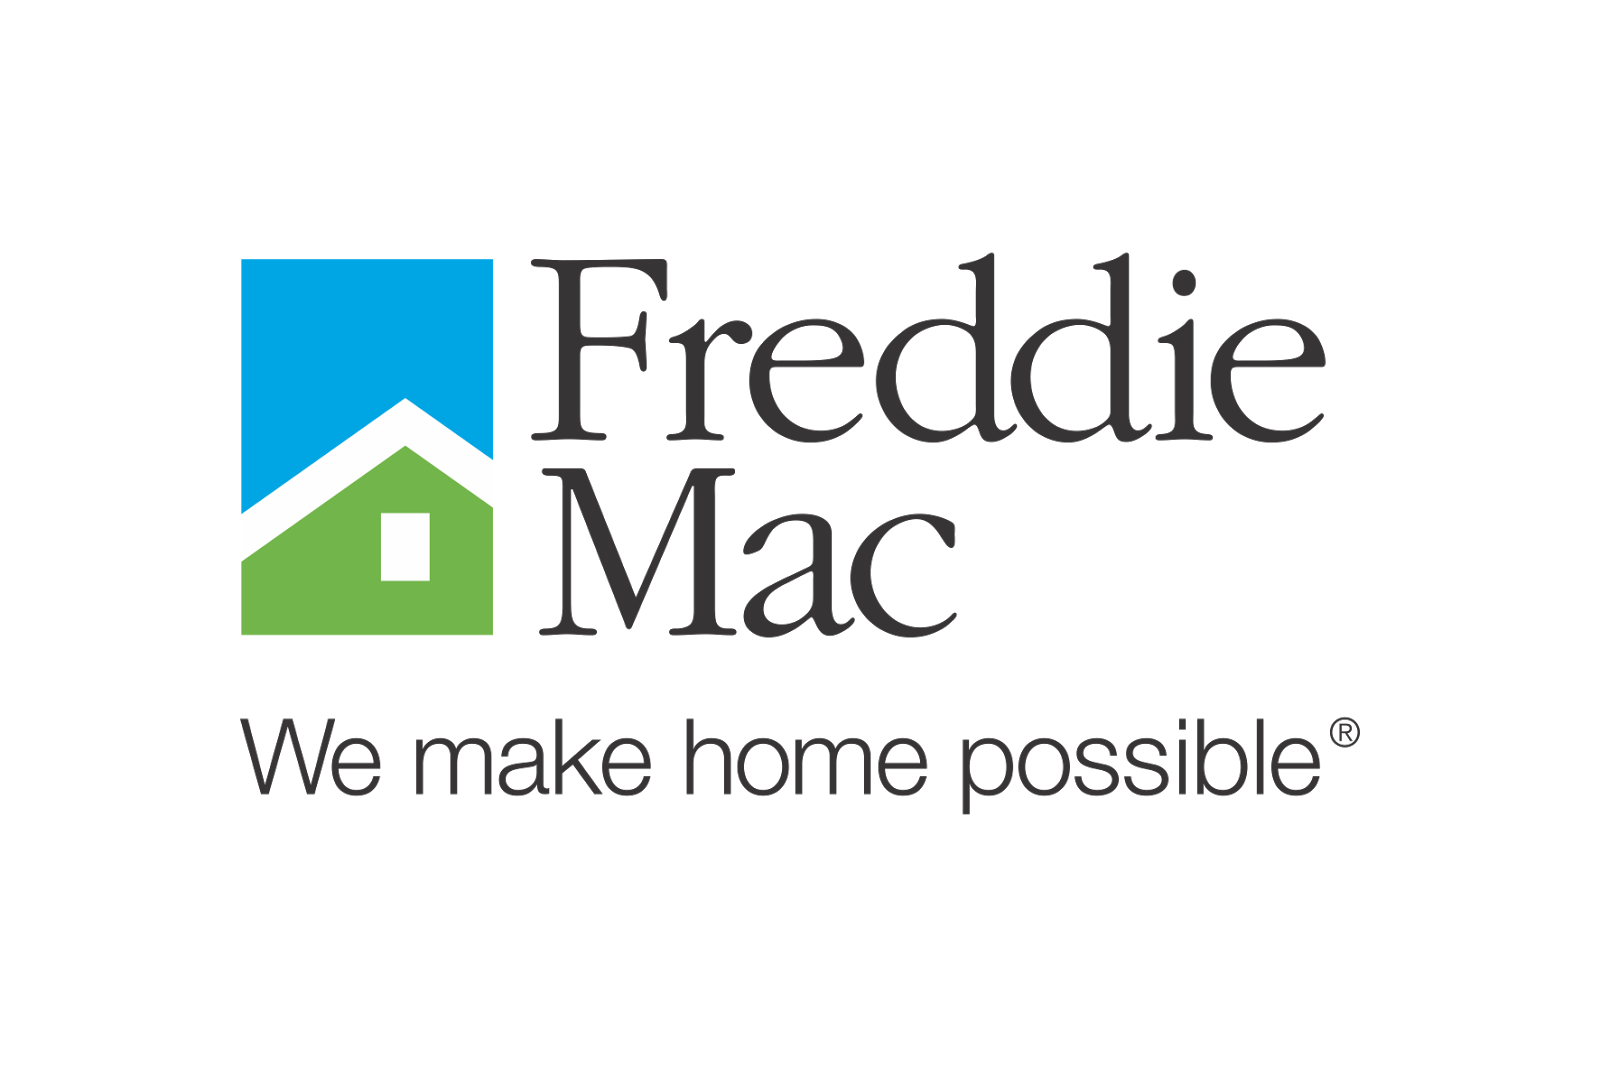 Freddie Logo Mac Download Free Image PNG Image